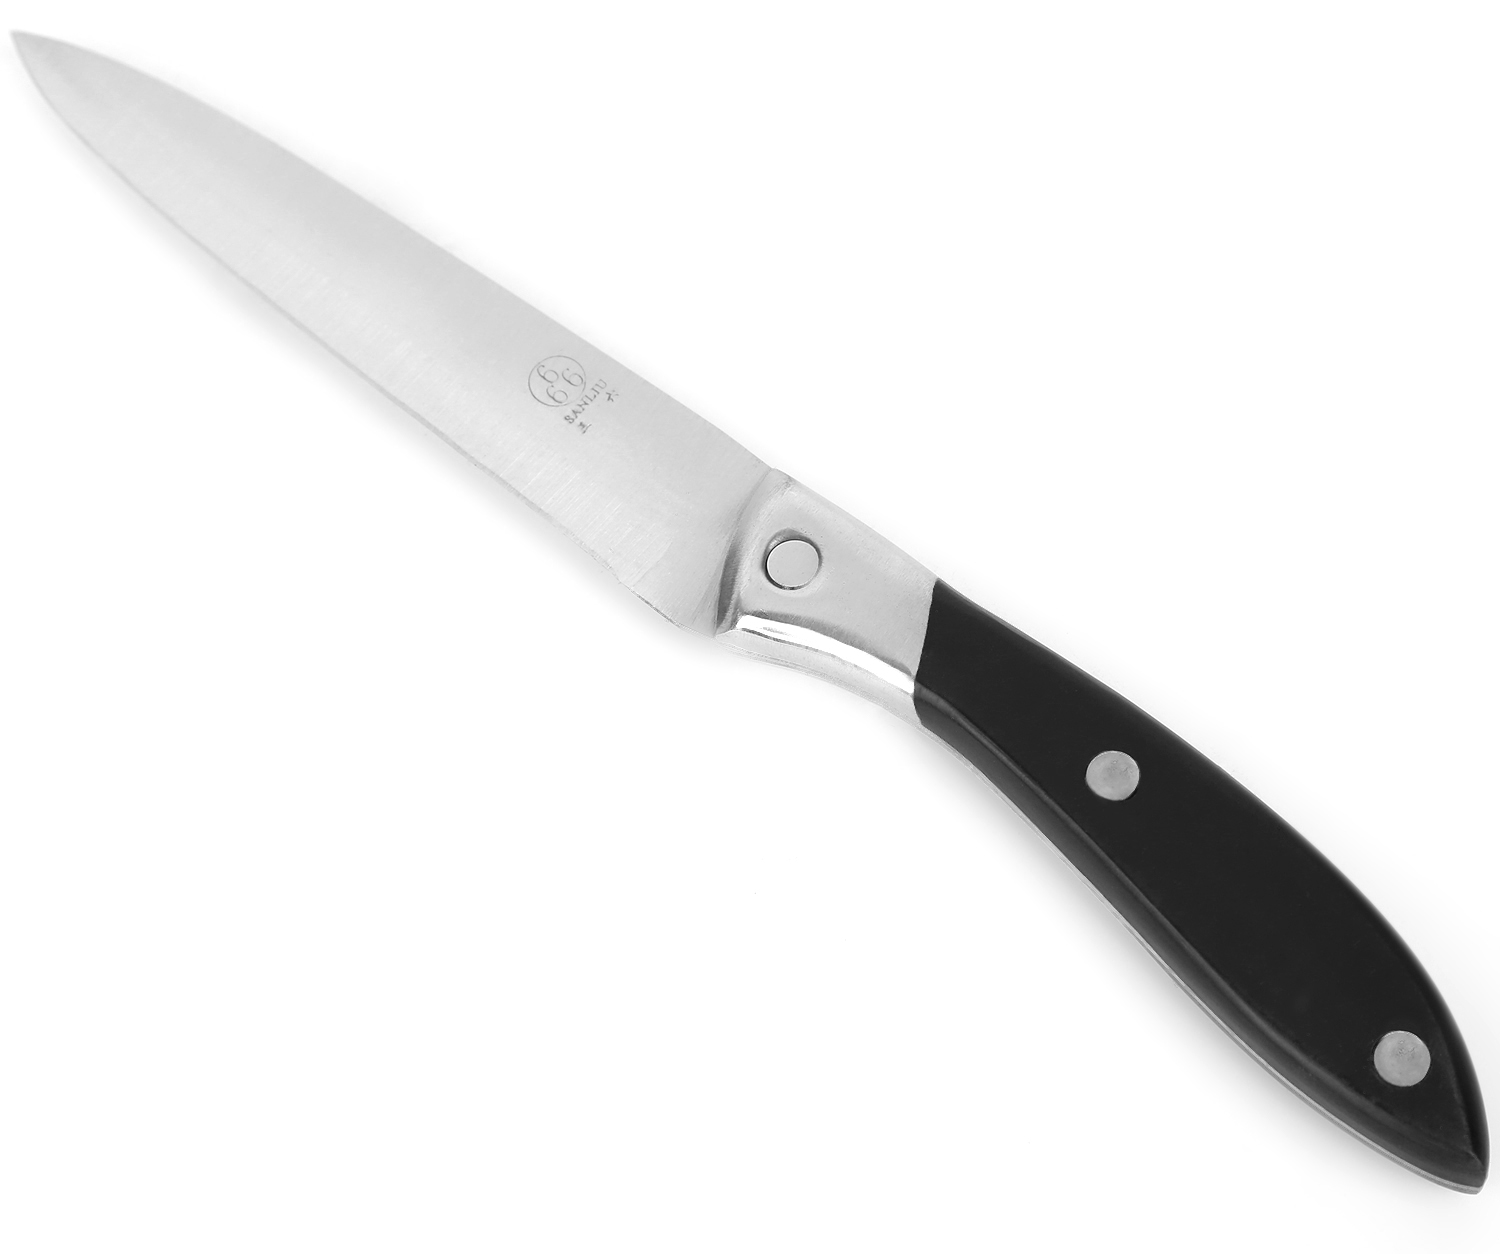 фото Нож универсальный, цвет: серебристый, черный, длина лезвия 12 см Sanliu 666